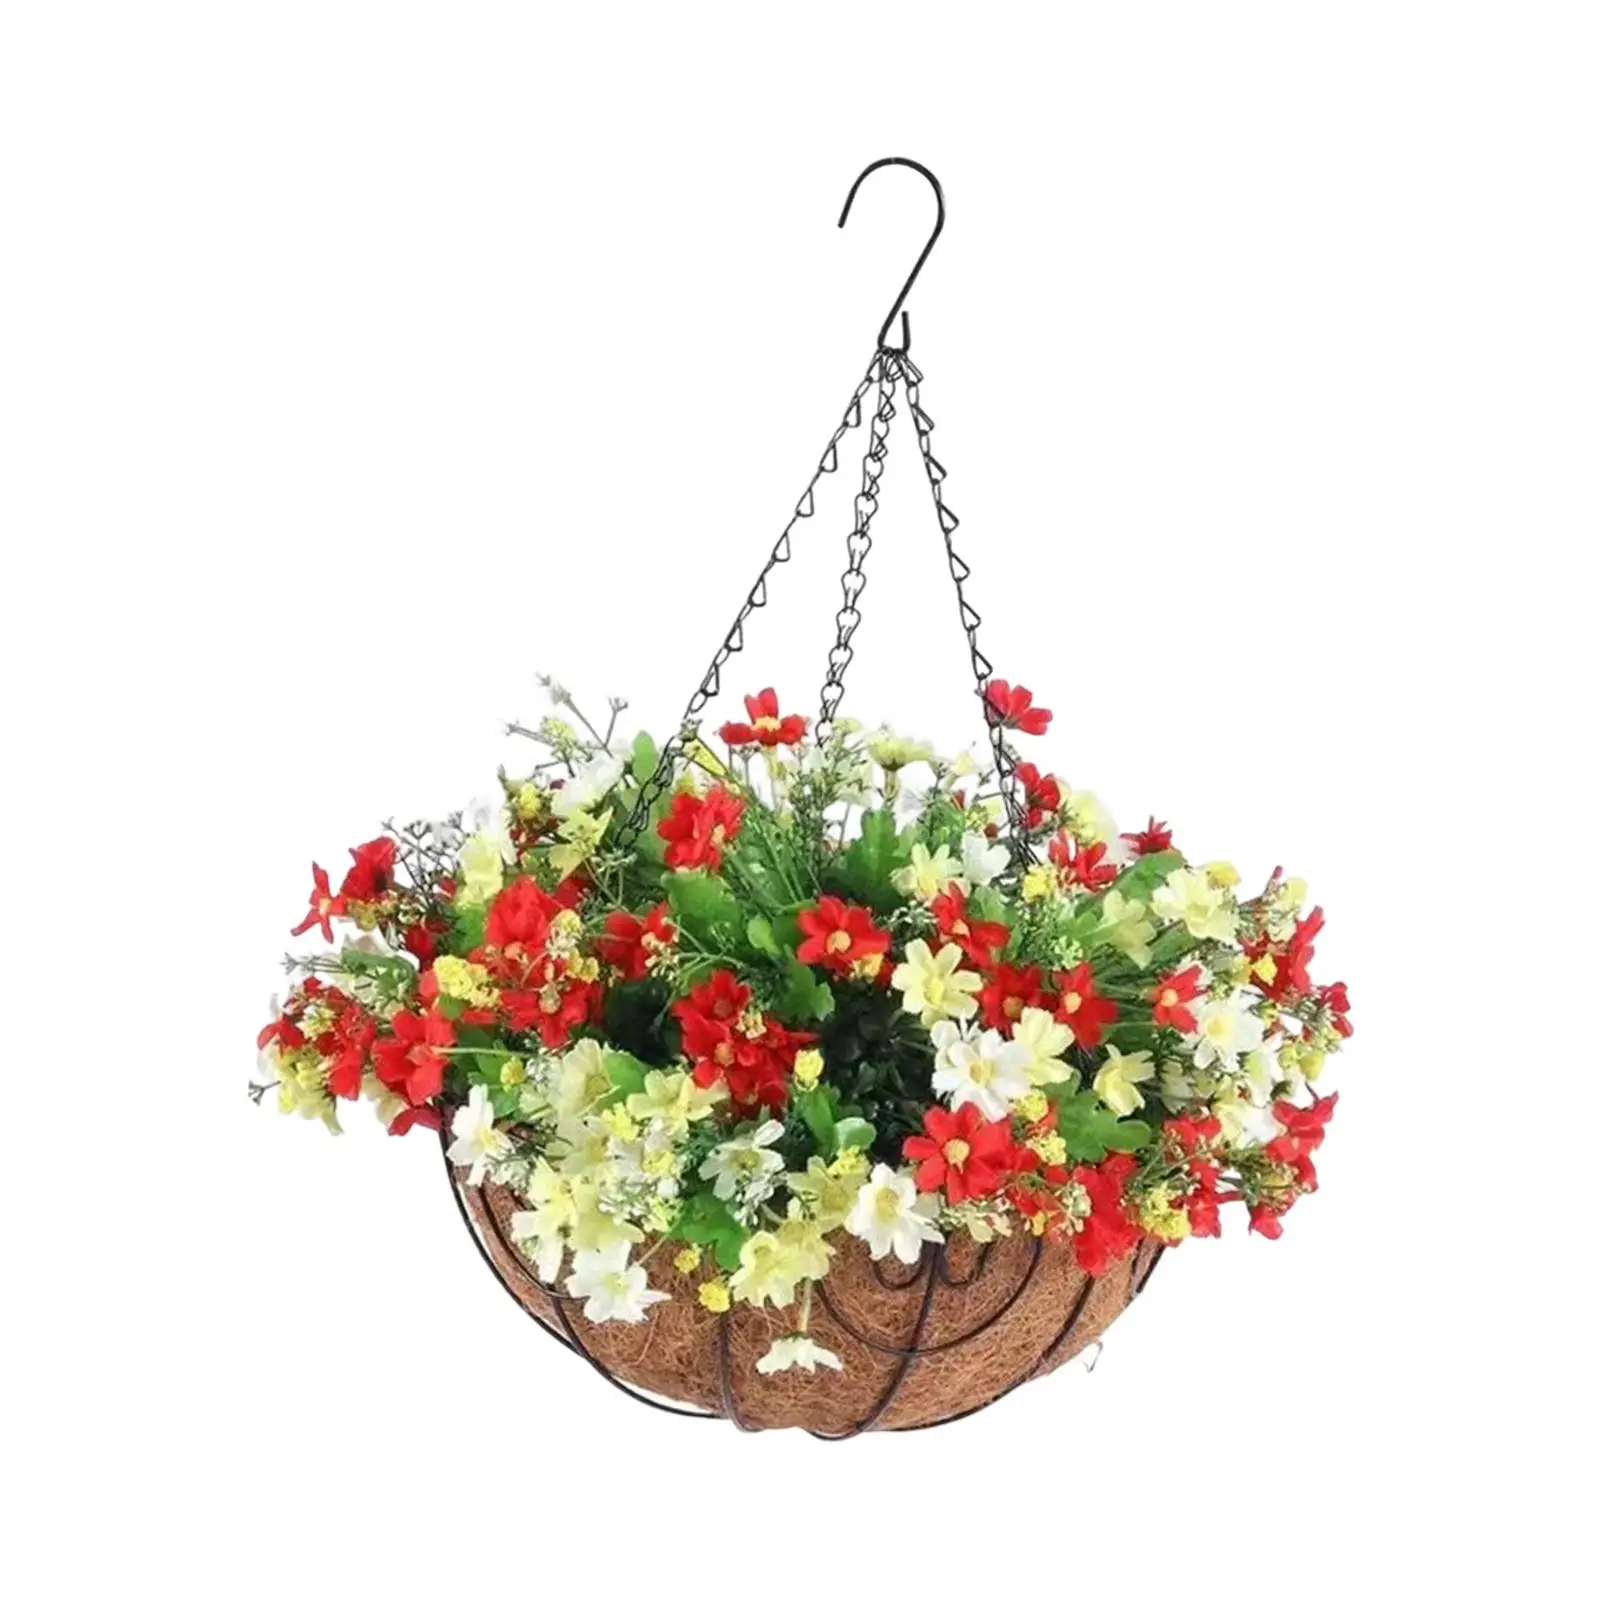 Artificial Flowers in Hanging Basket Plants Ornament Flowerpot Porch Pot Hanger for Outdoor Indoor Lawn Balcony Garden Home